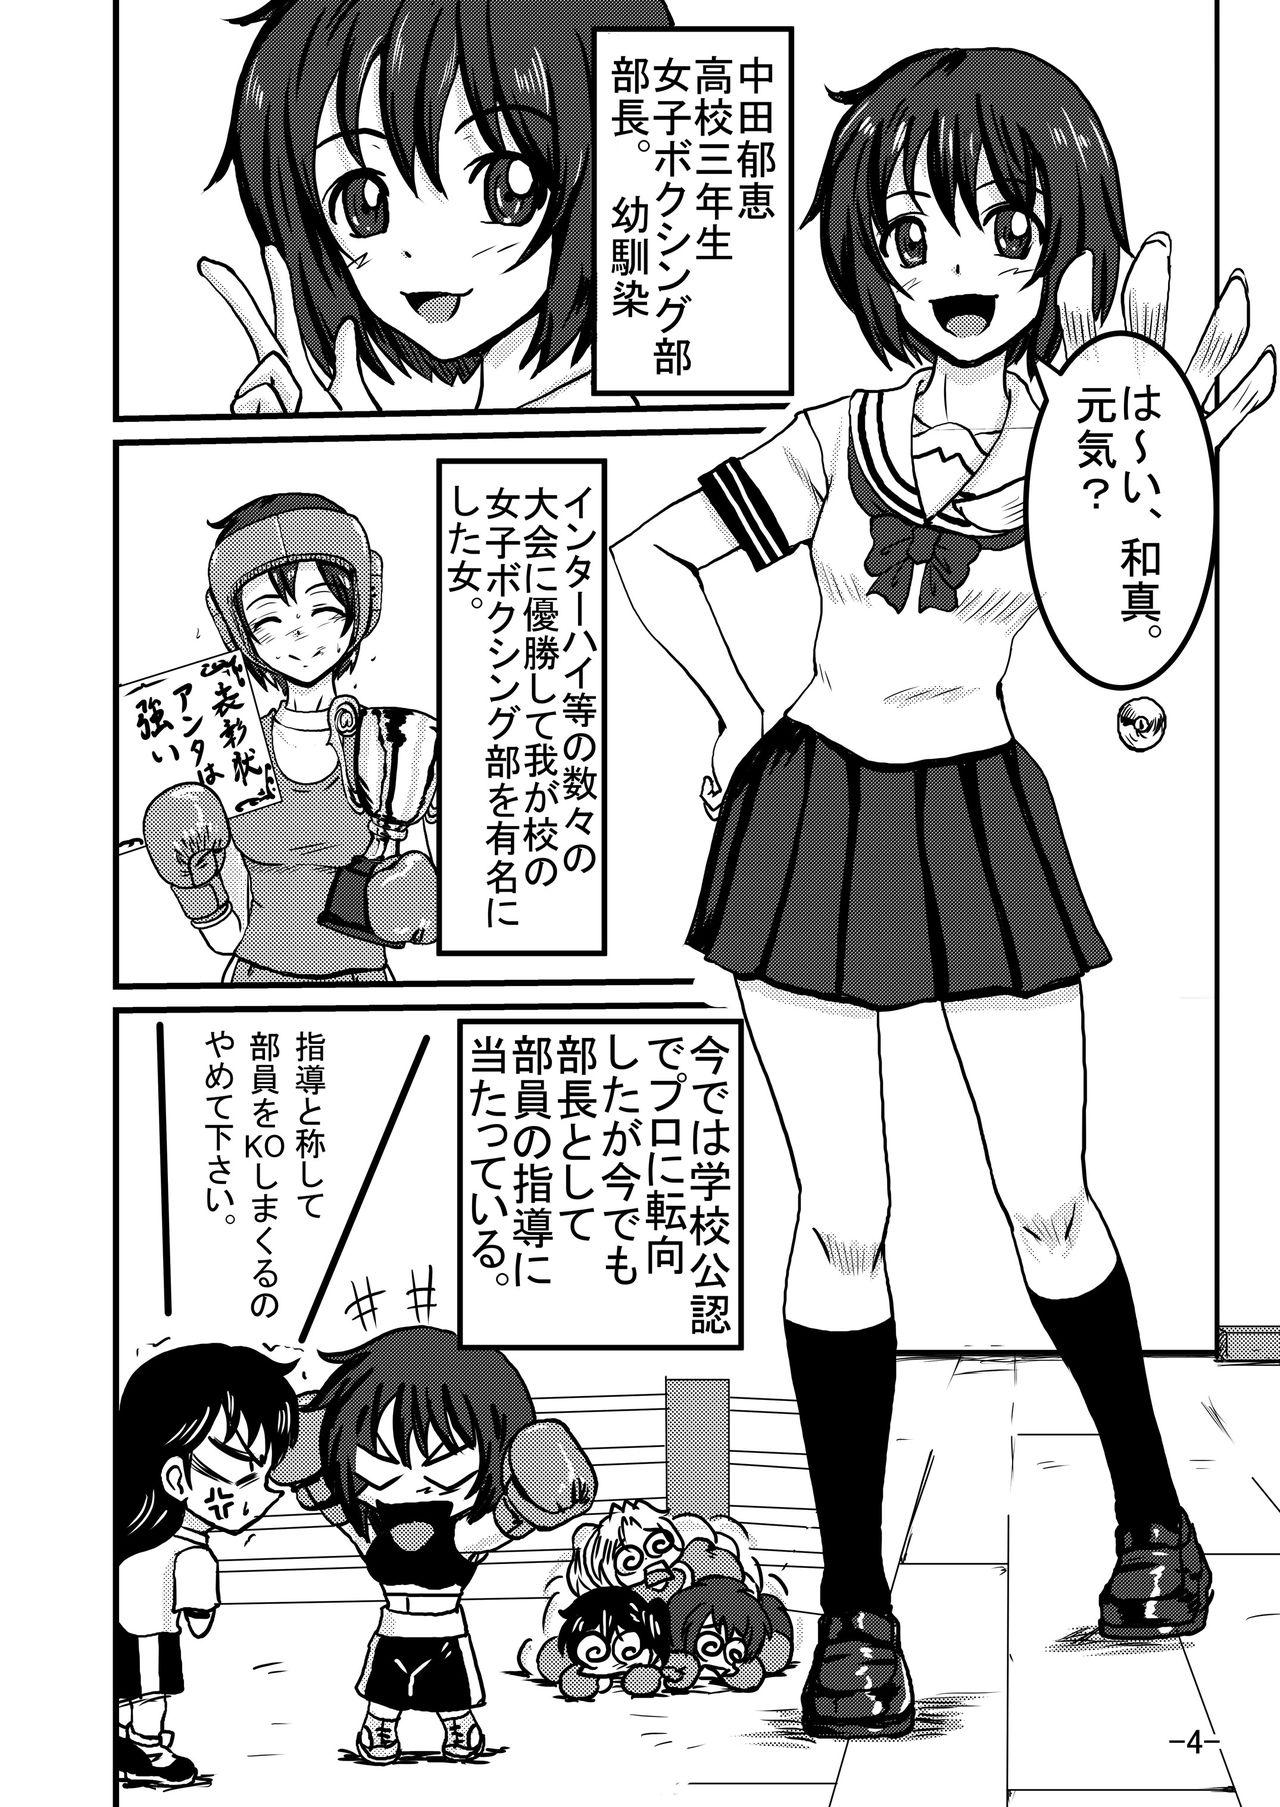 Funny Bushitsu Soudatsusen - Original Rubdown - Page 4